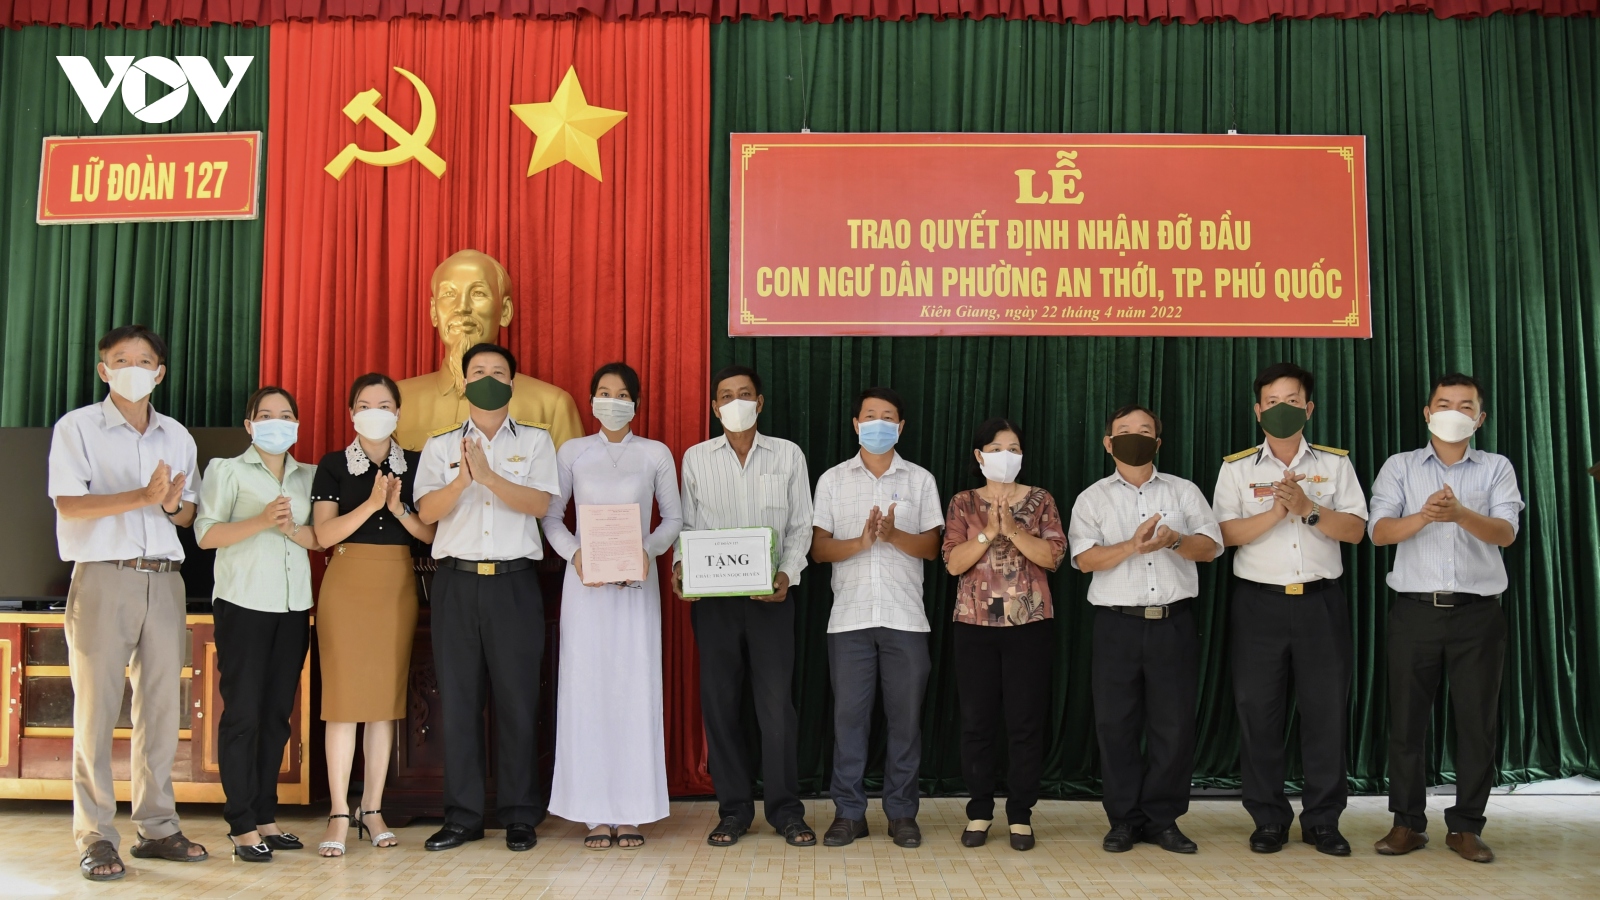 Hải quân Việt Nam nhận đỡ đầu con ngư dân